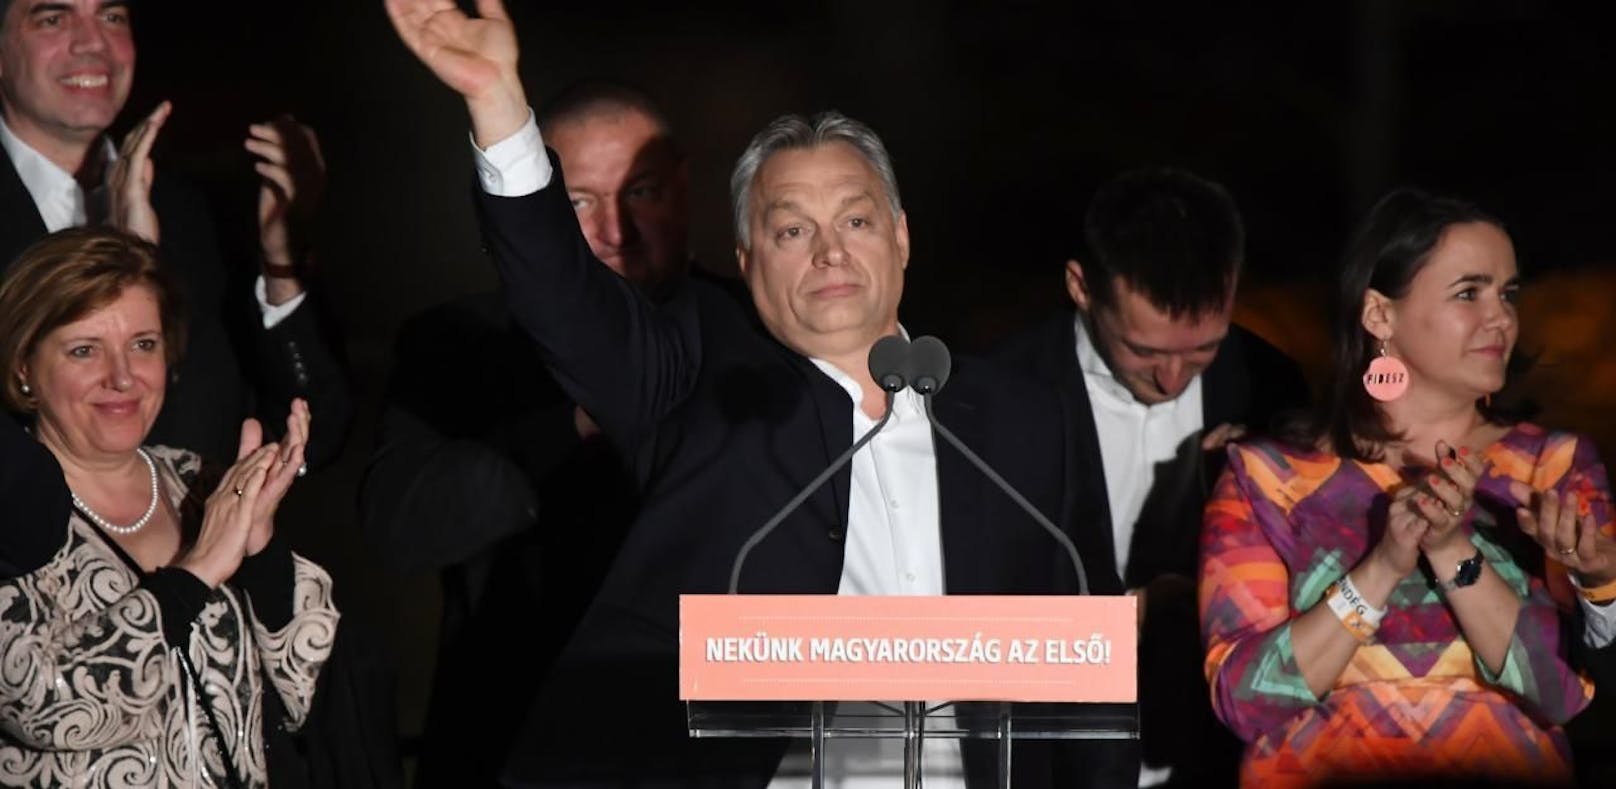 Viktor Orban und seine Fidesz-Partei sind deutlicher Wahlsieger in Ungarn